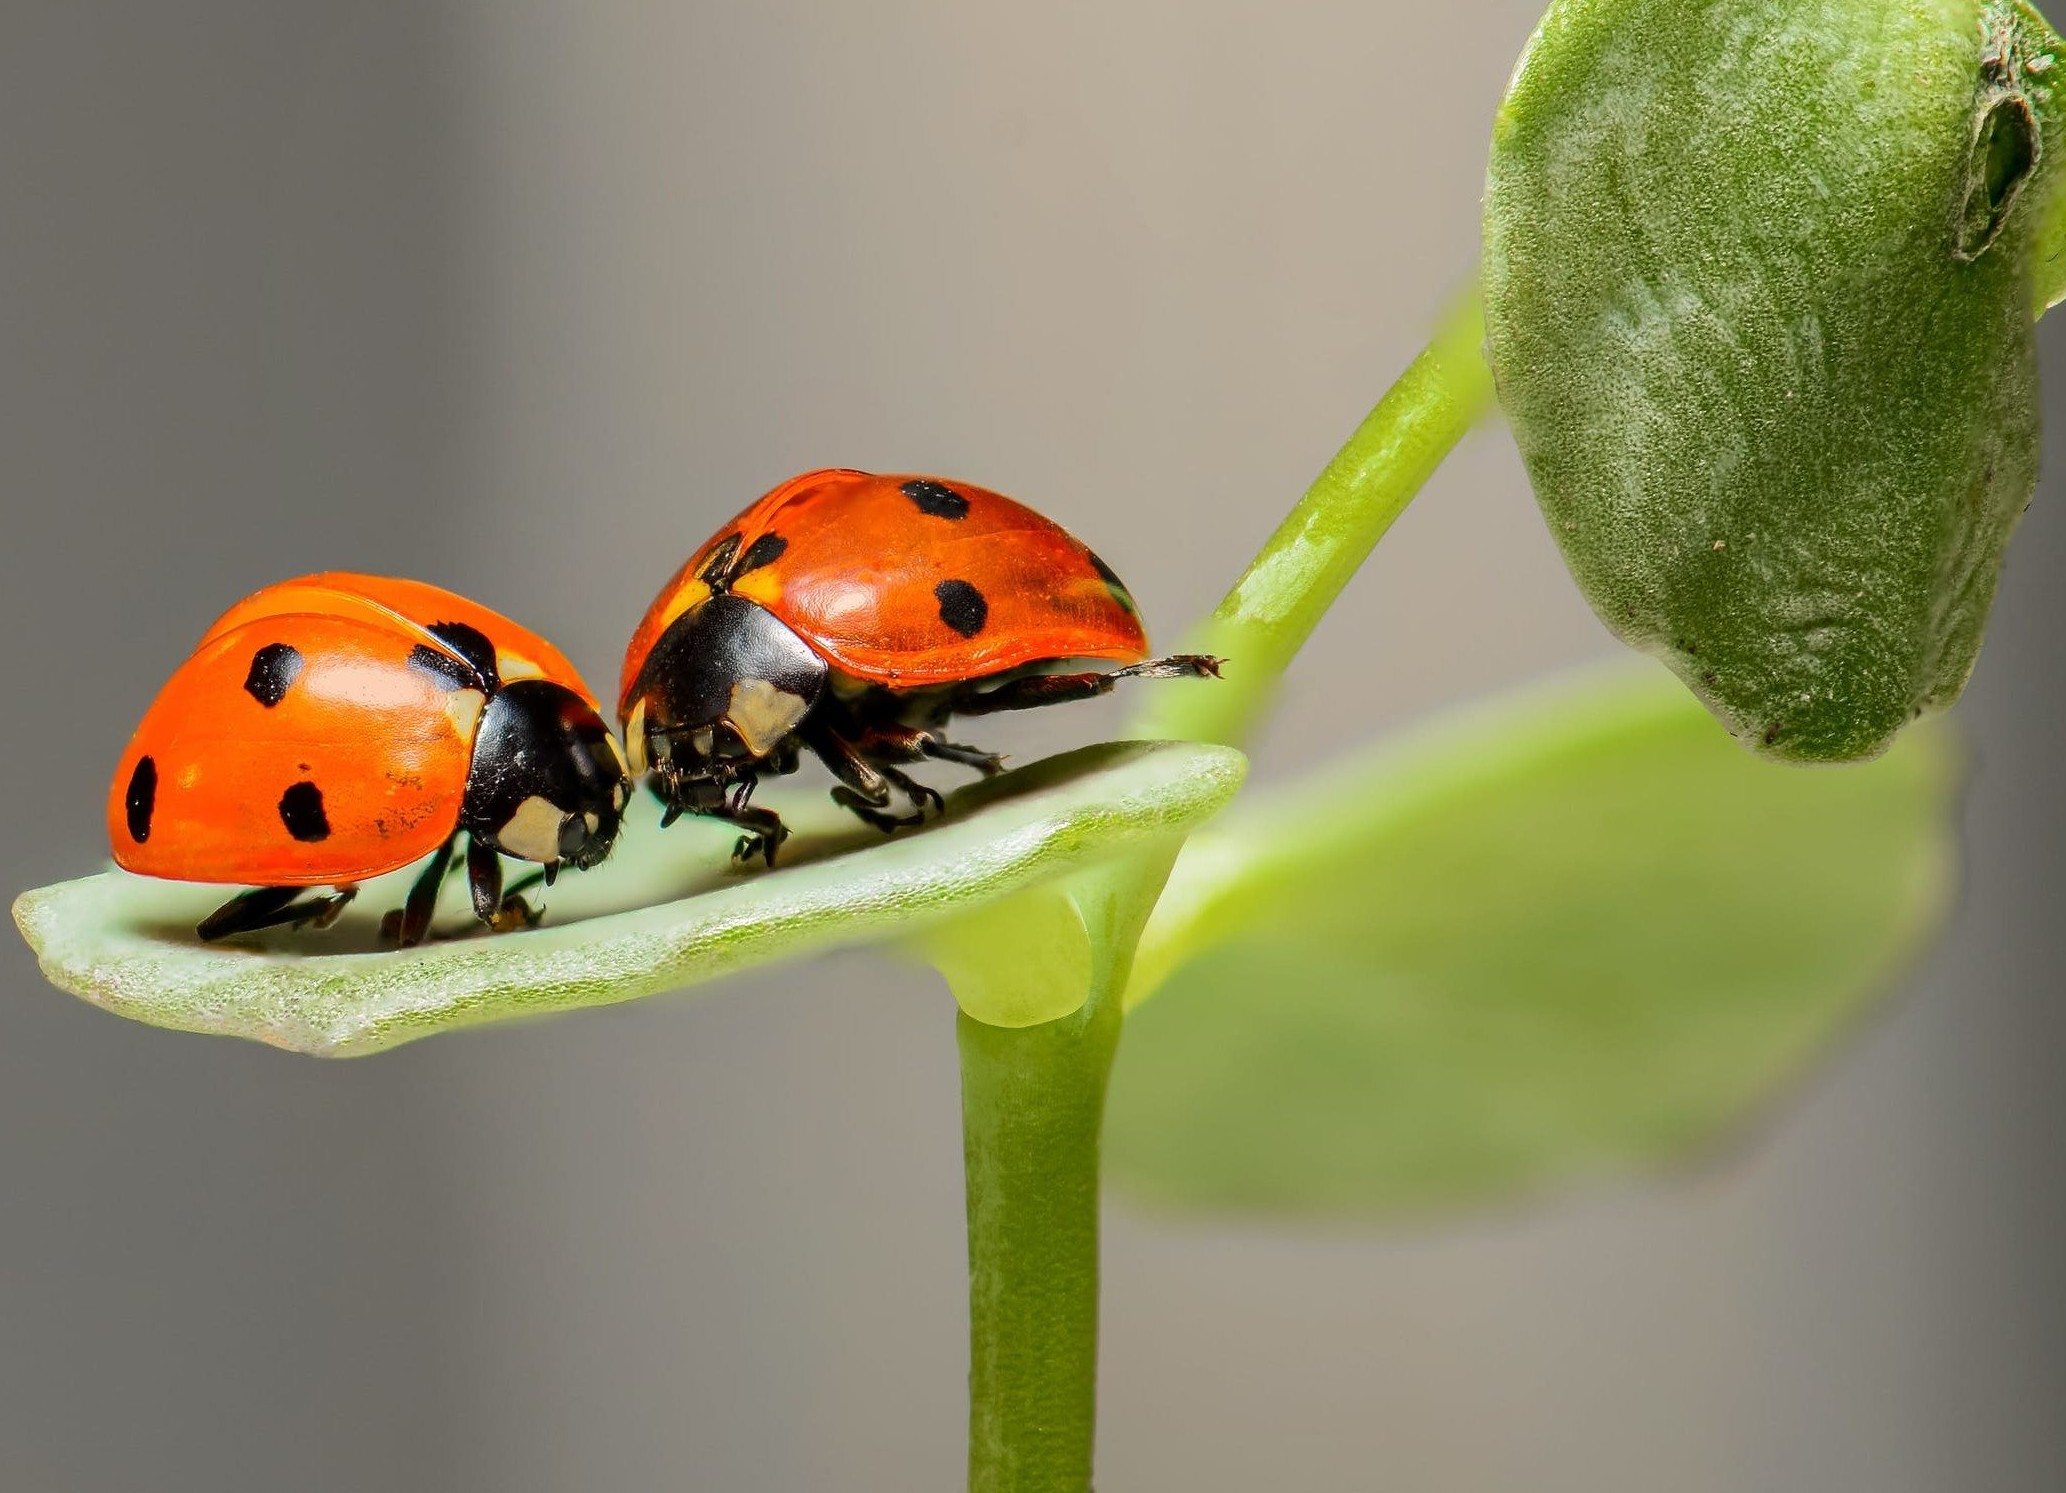 Two ladybugs sitting on leaf.